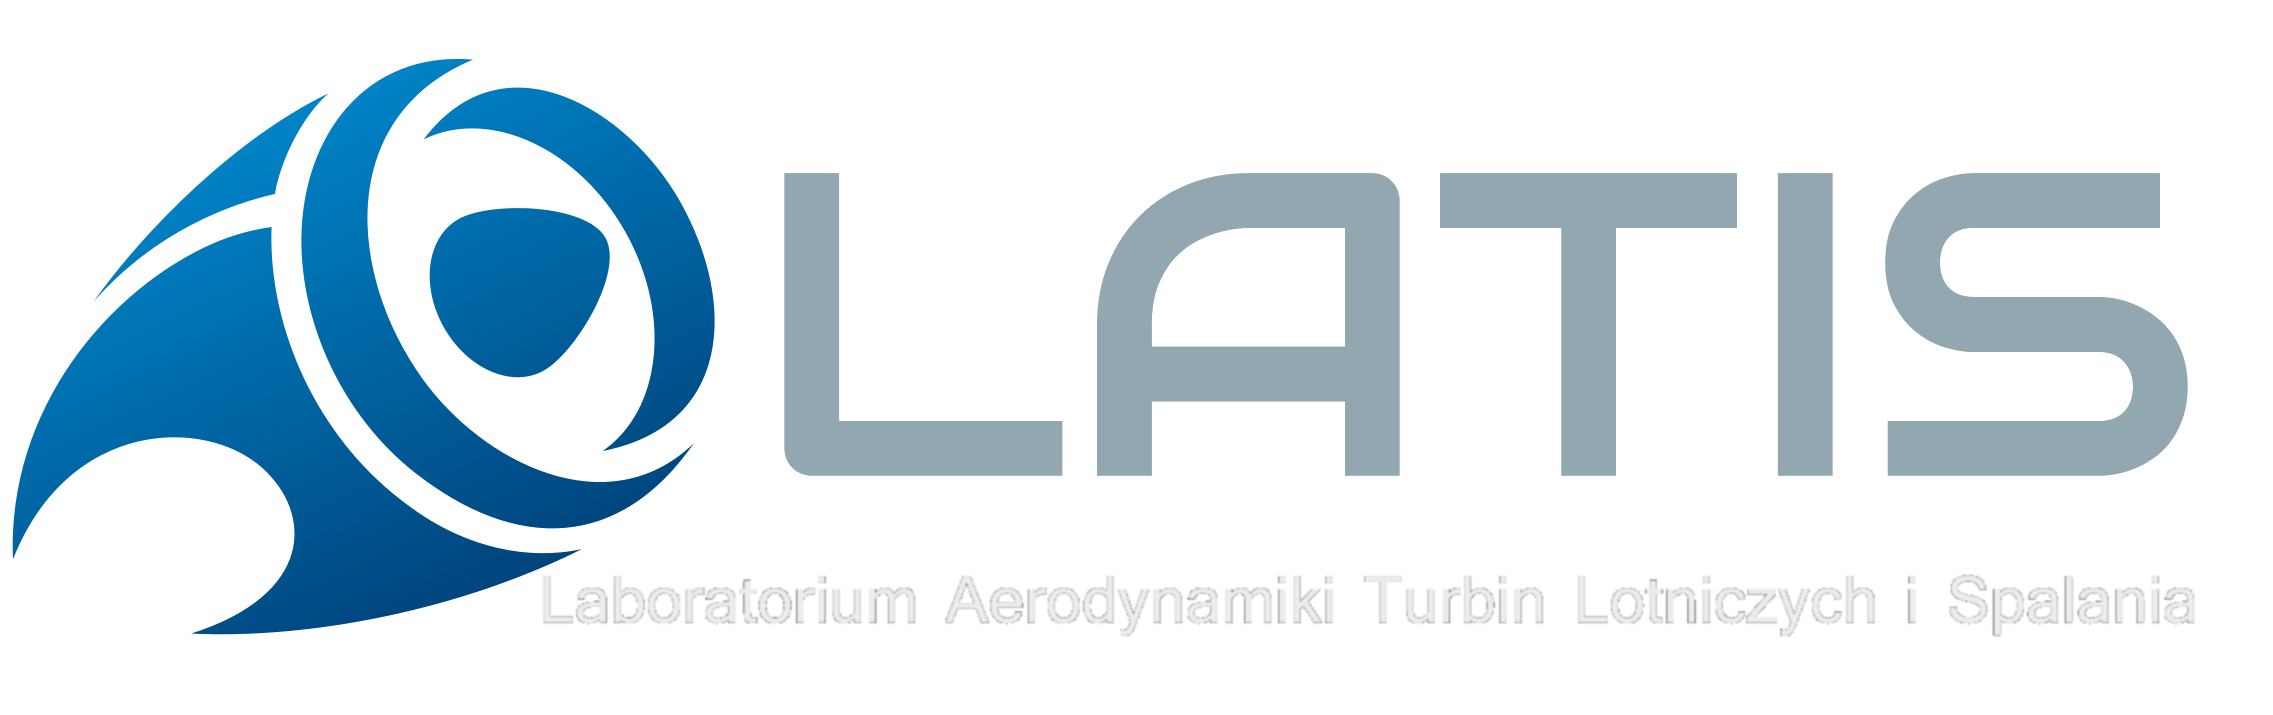 Laboratorium Aerodynamiki Turbin Lotniczych i Spalania